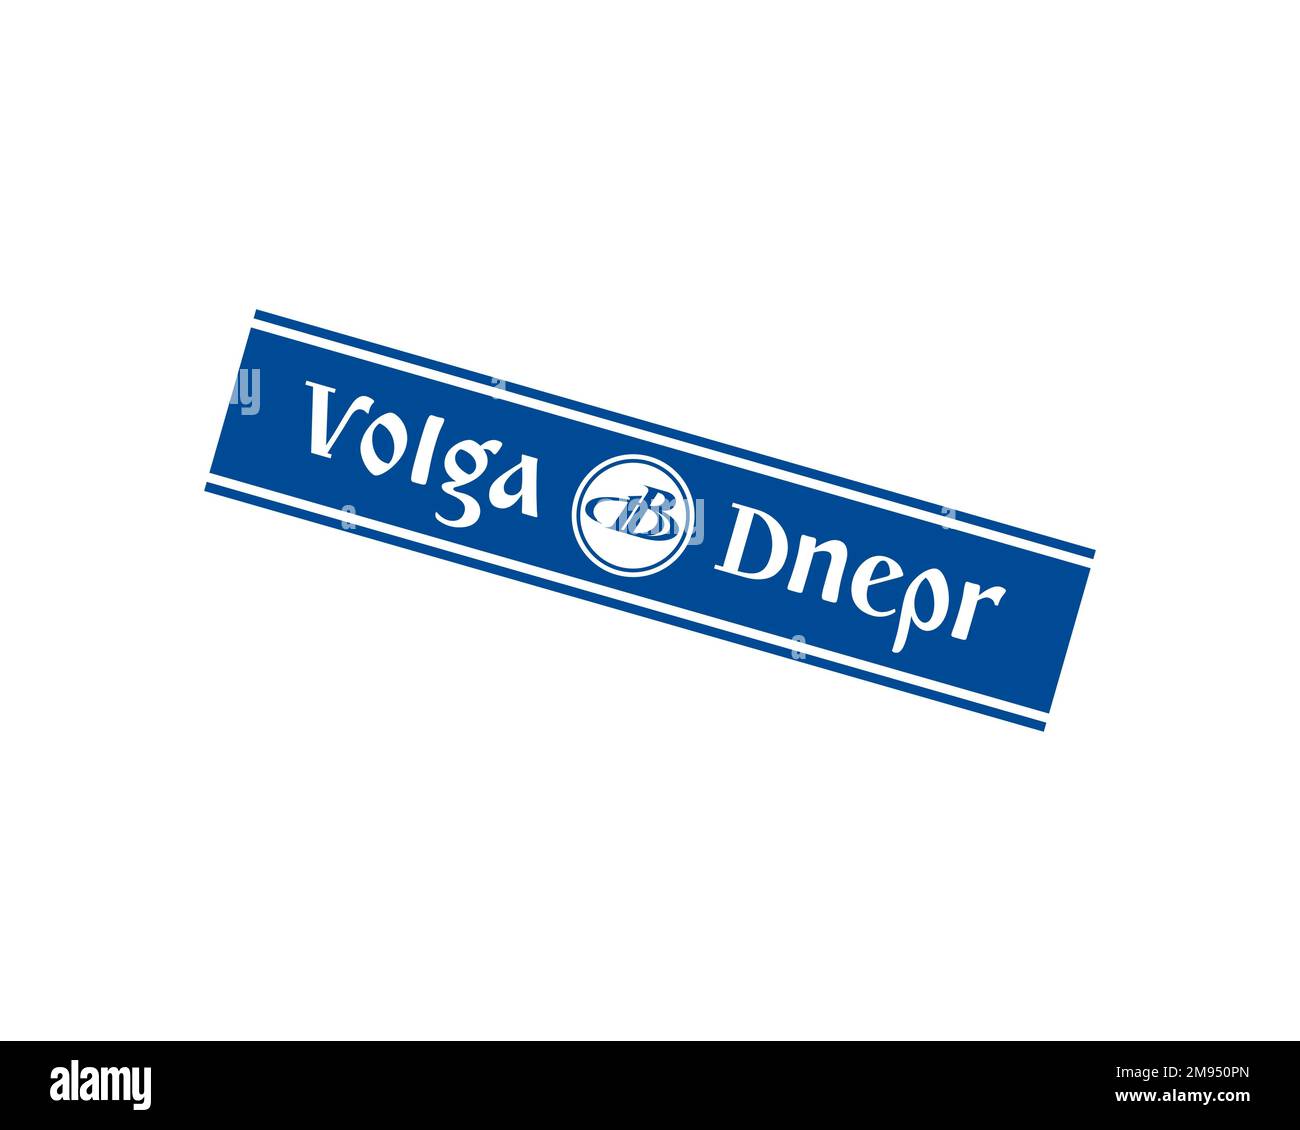 Volga Dnepr Airline, logo pivoté, fond blanc B Banque D'Images